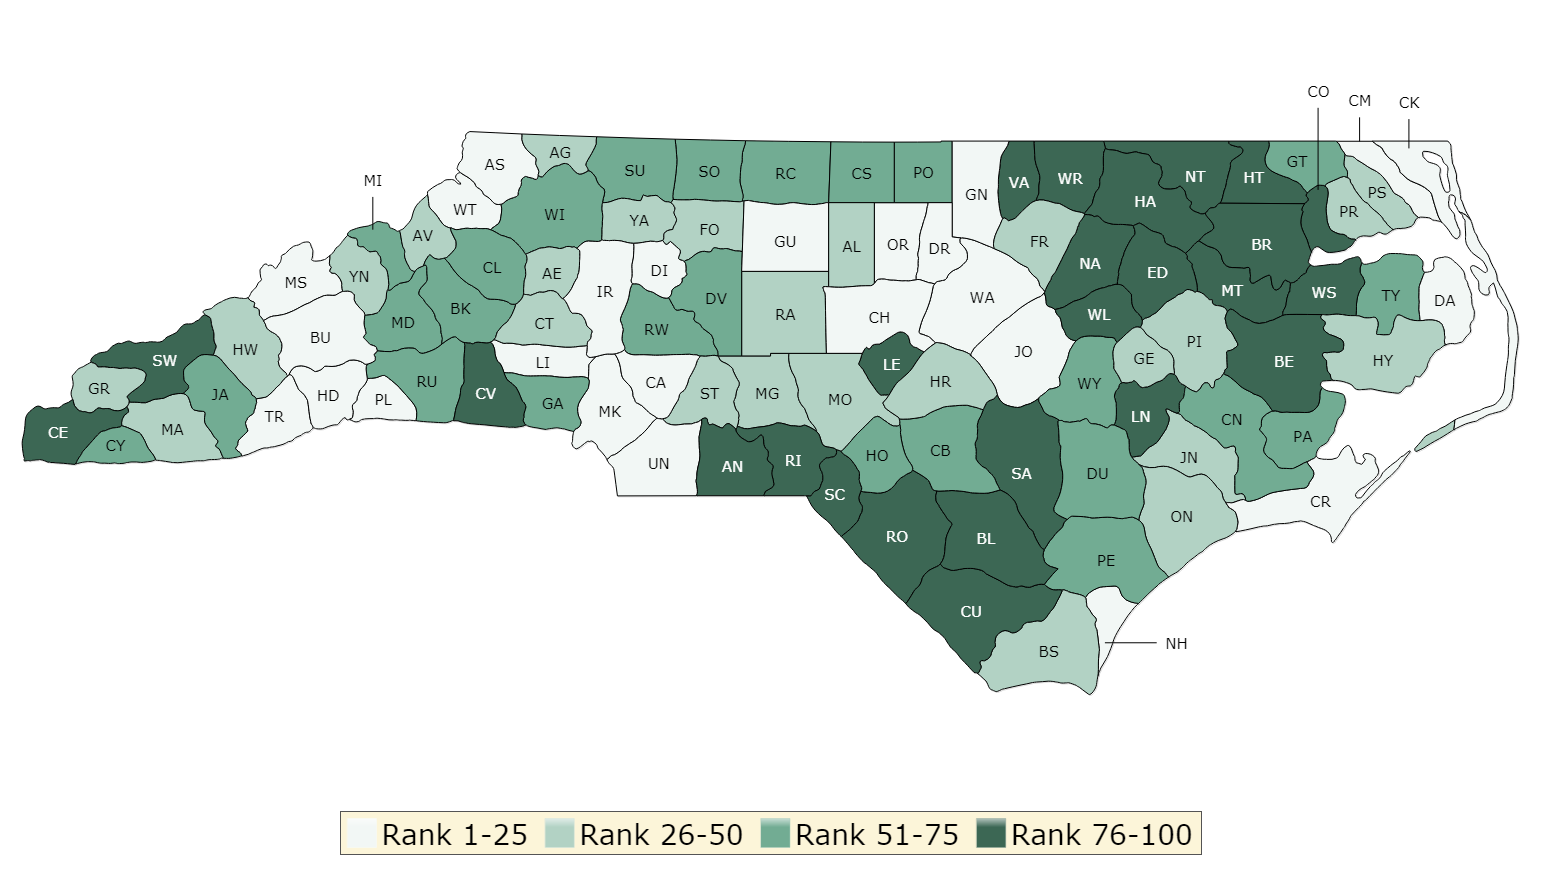 2019 Health Outcomes - North Carolina